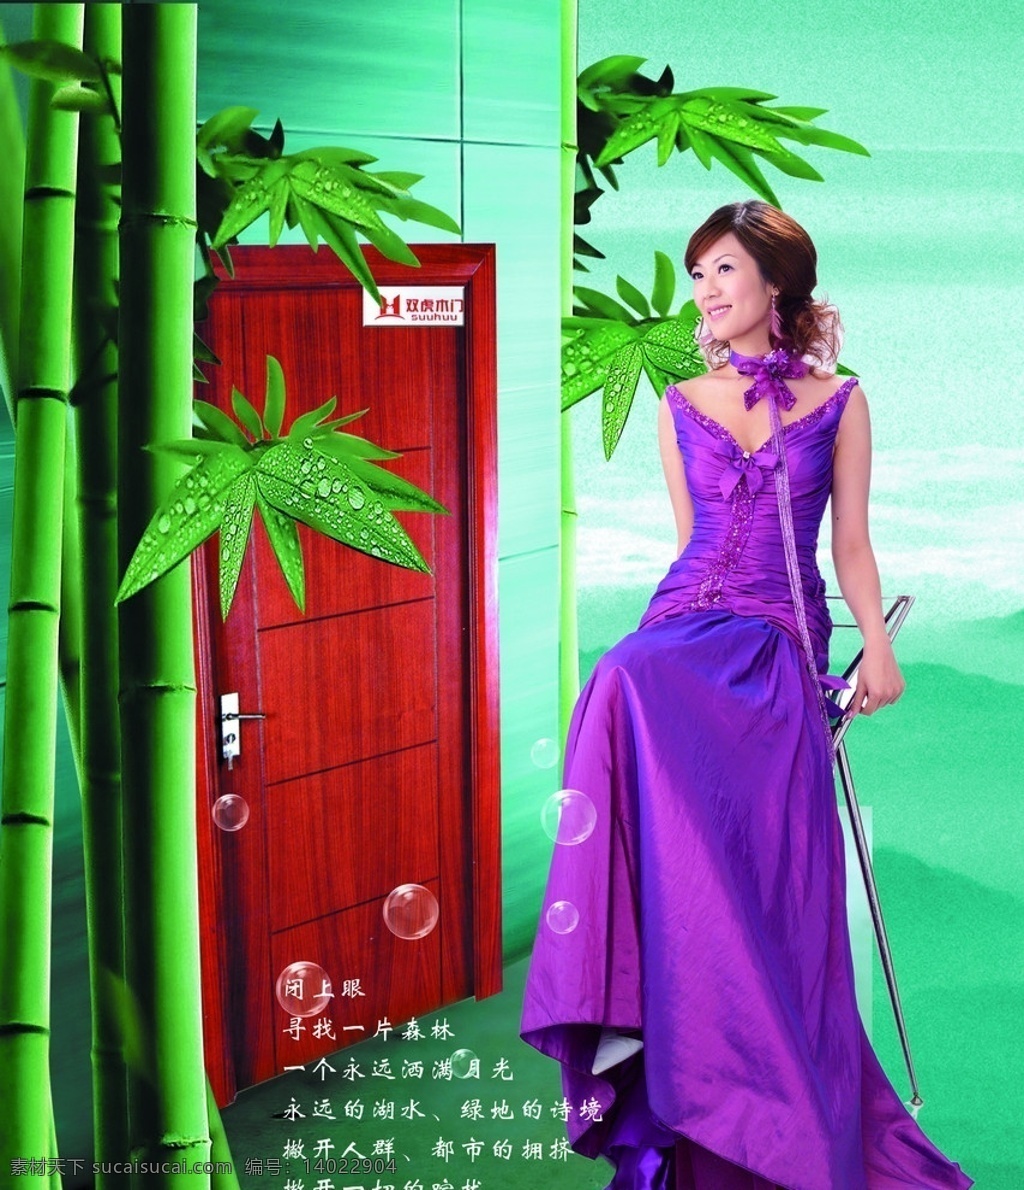 木门 绿色背景 竹子 双虎木门 实木门 美女 竹叶 紫色 分层 海报 广告设计模板 源文件